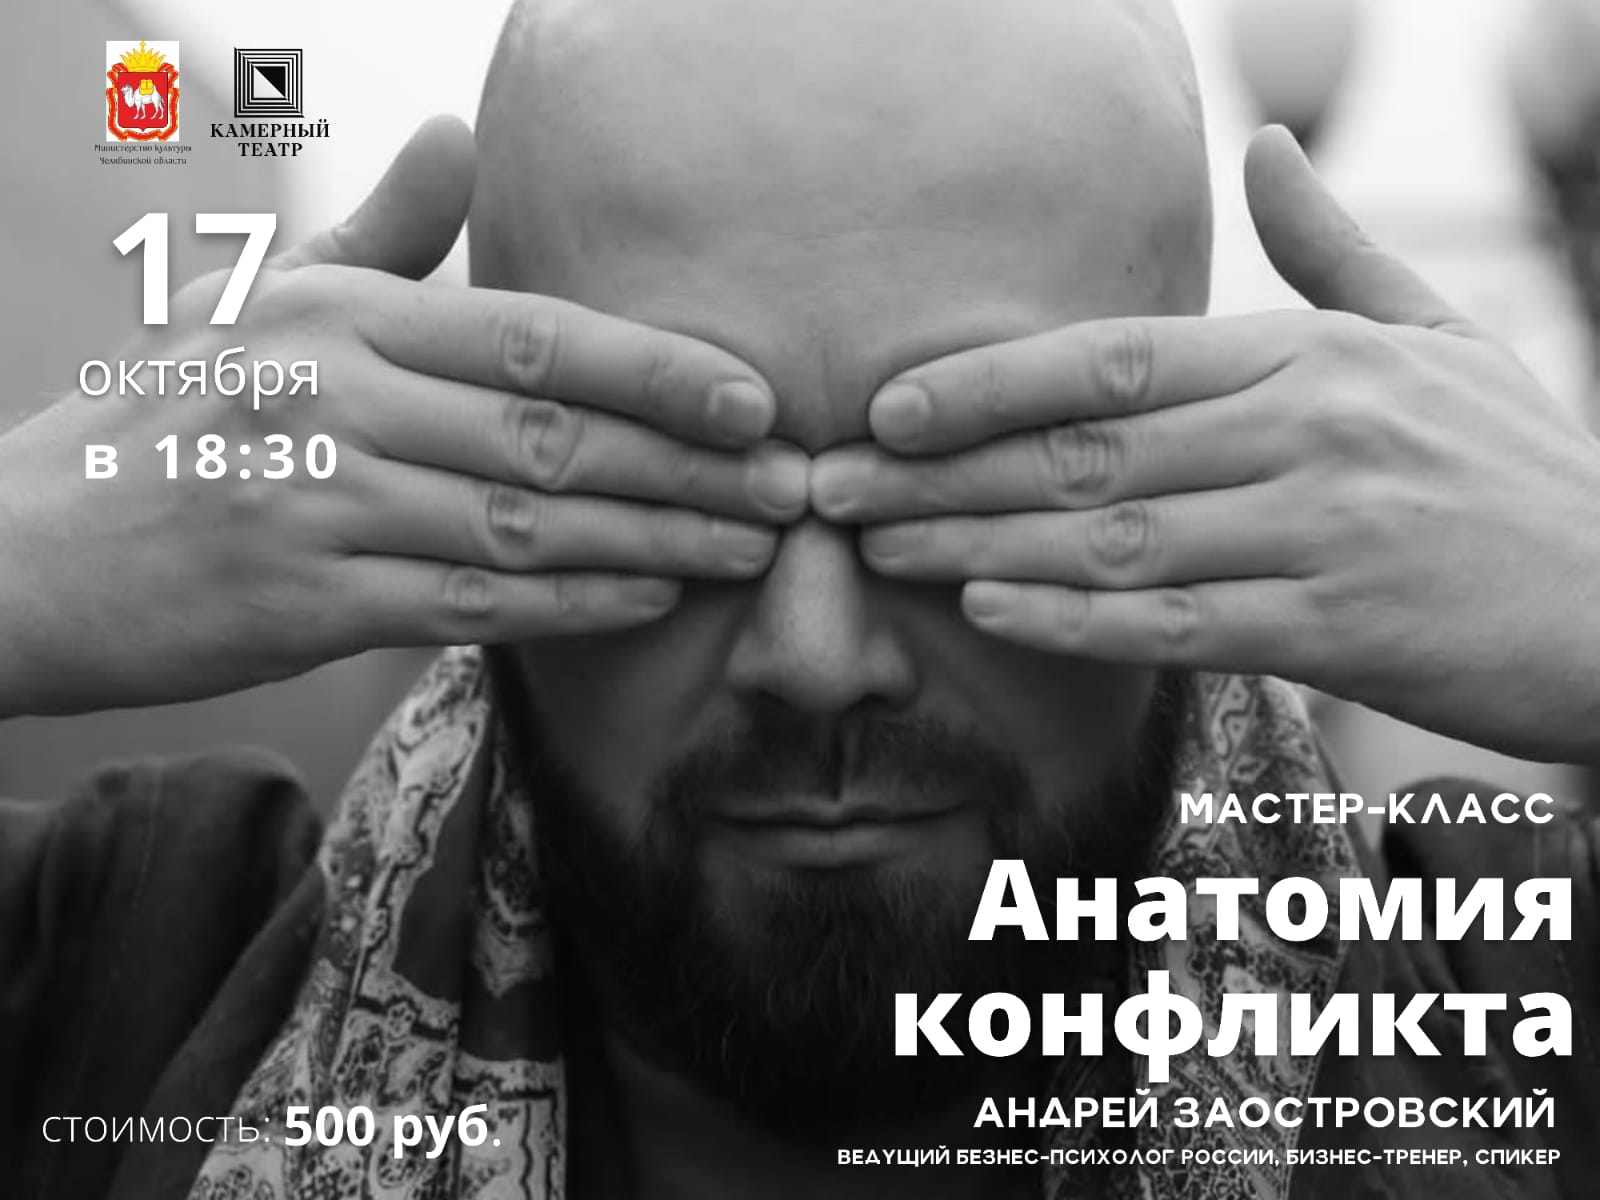 В роли коуча выступит актер и хореограф театра Андрей Заостровский